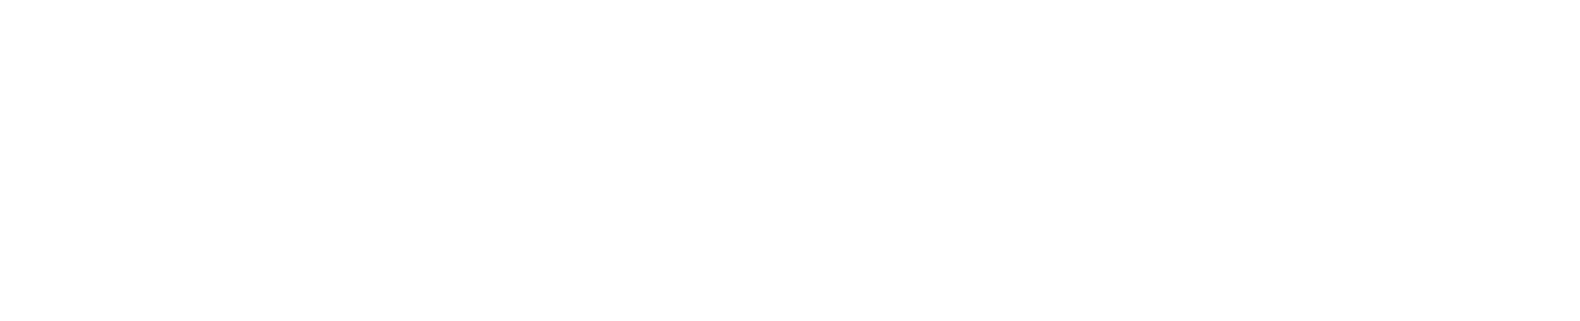 Babcock International Group logo grand pour les fonds sombres (PNG transparent)